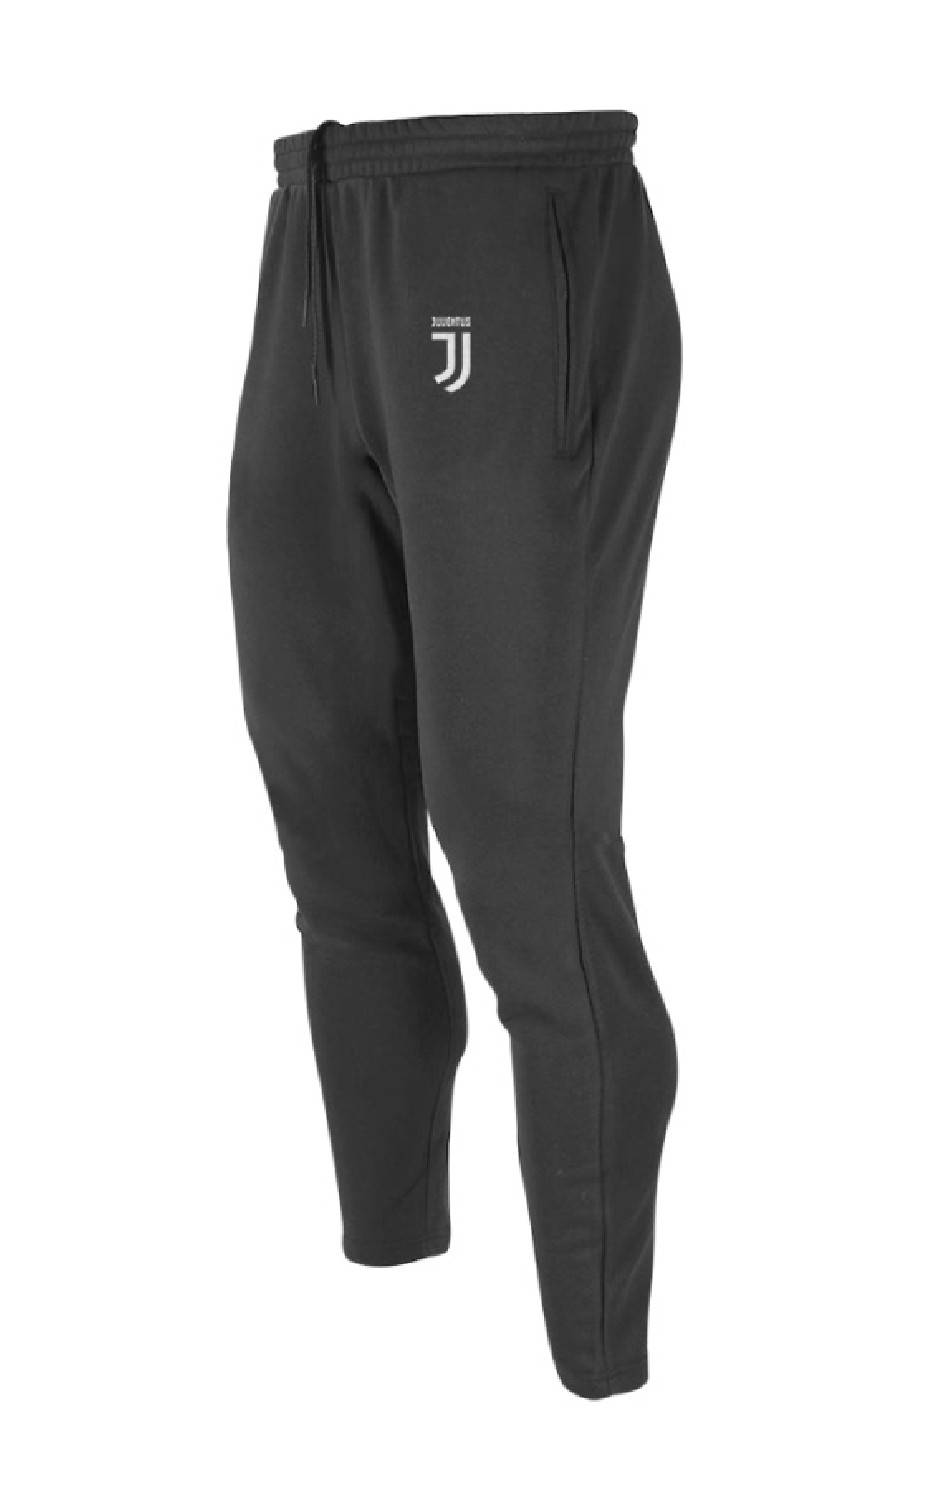 Pantalone Tuta Adulto Juventus Abbigliamento Ufficiale Tifosi PS 33691 JJ | Pelusciamo.com